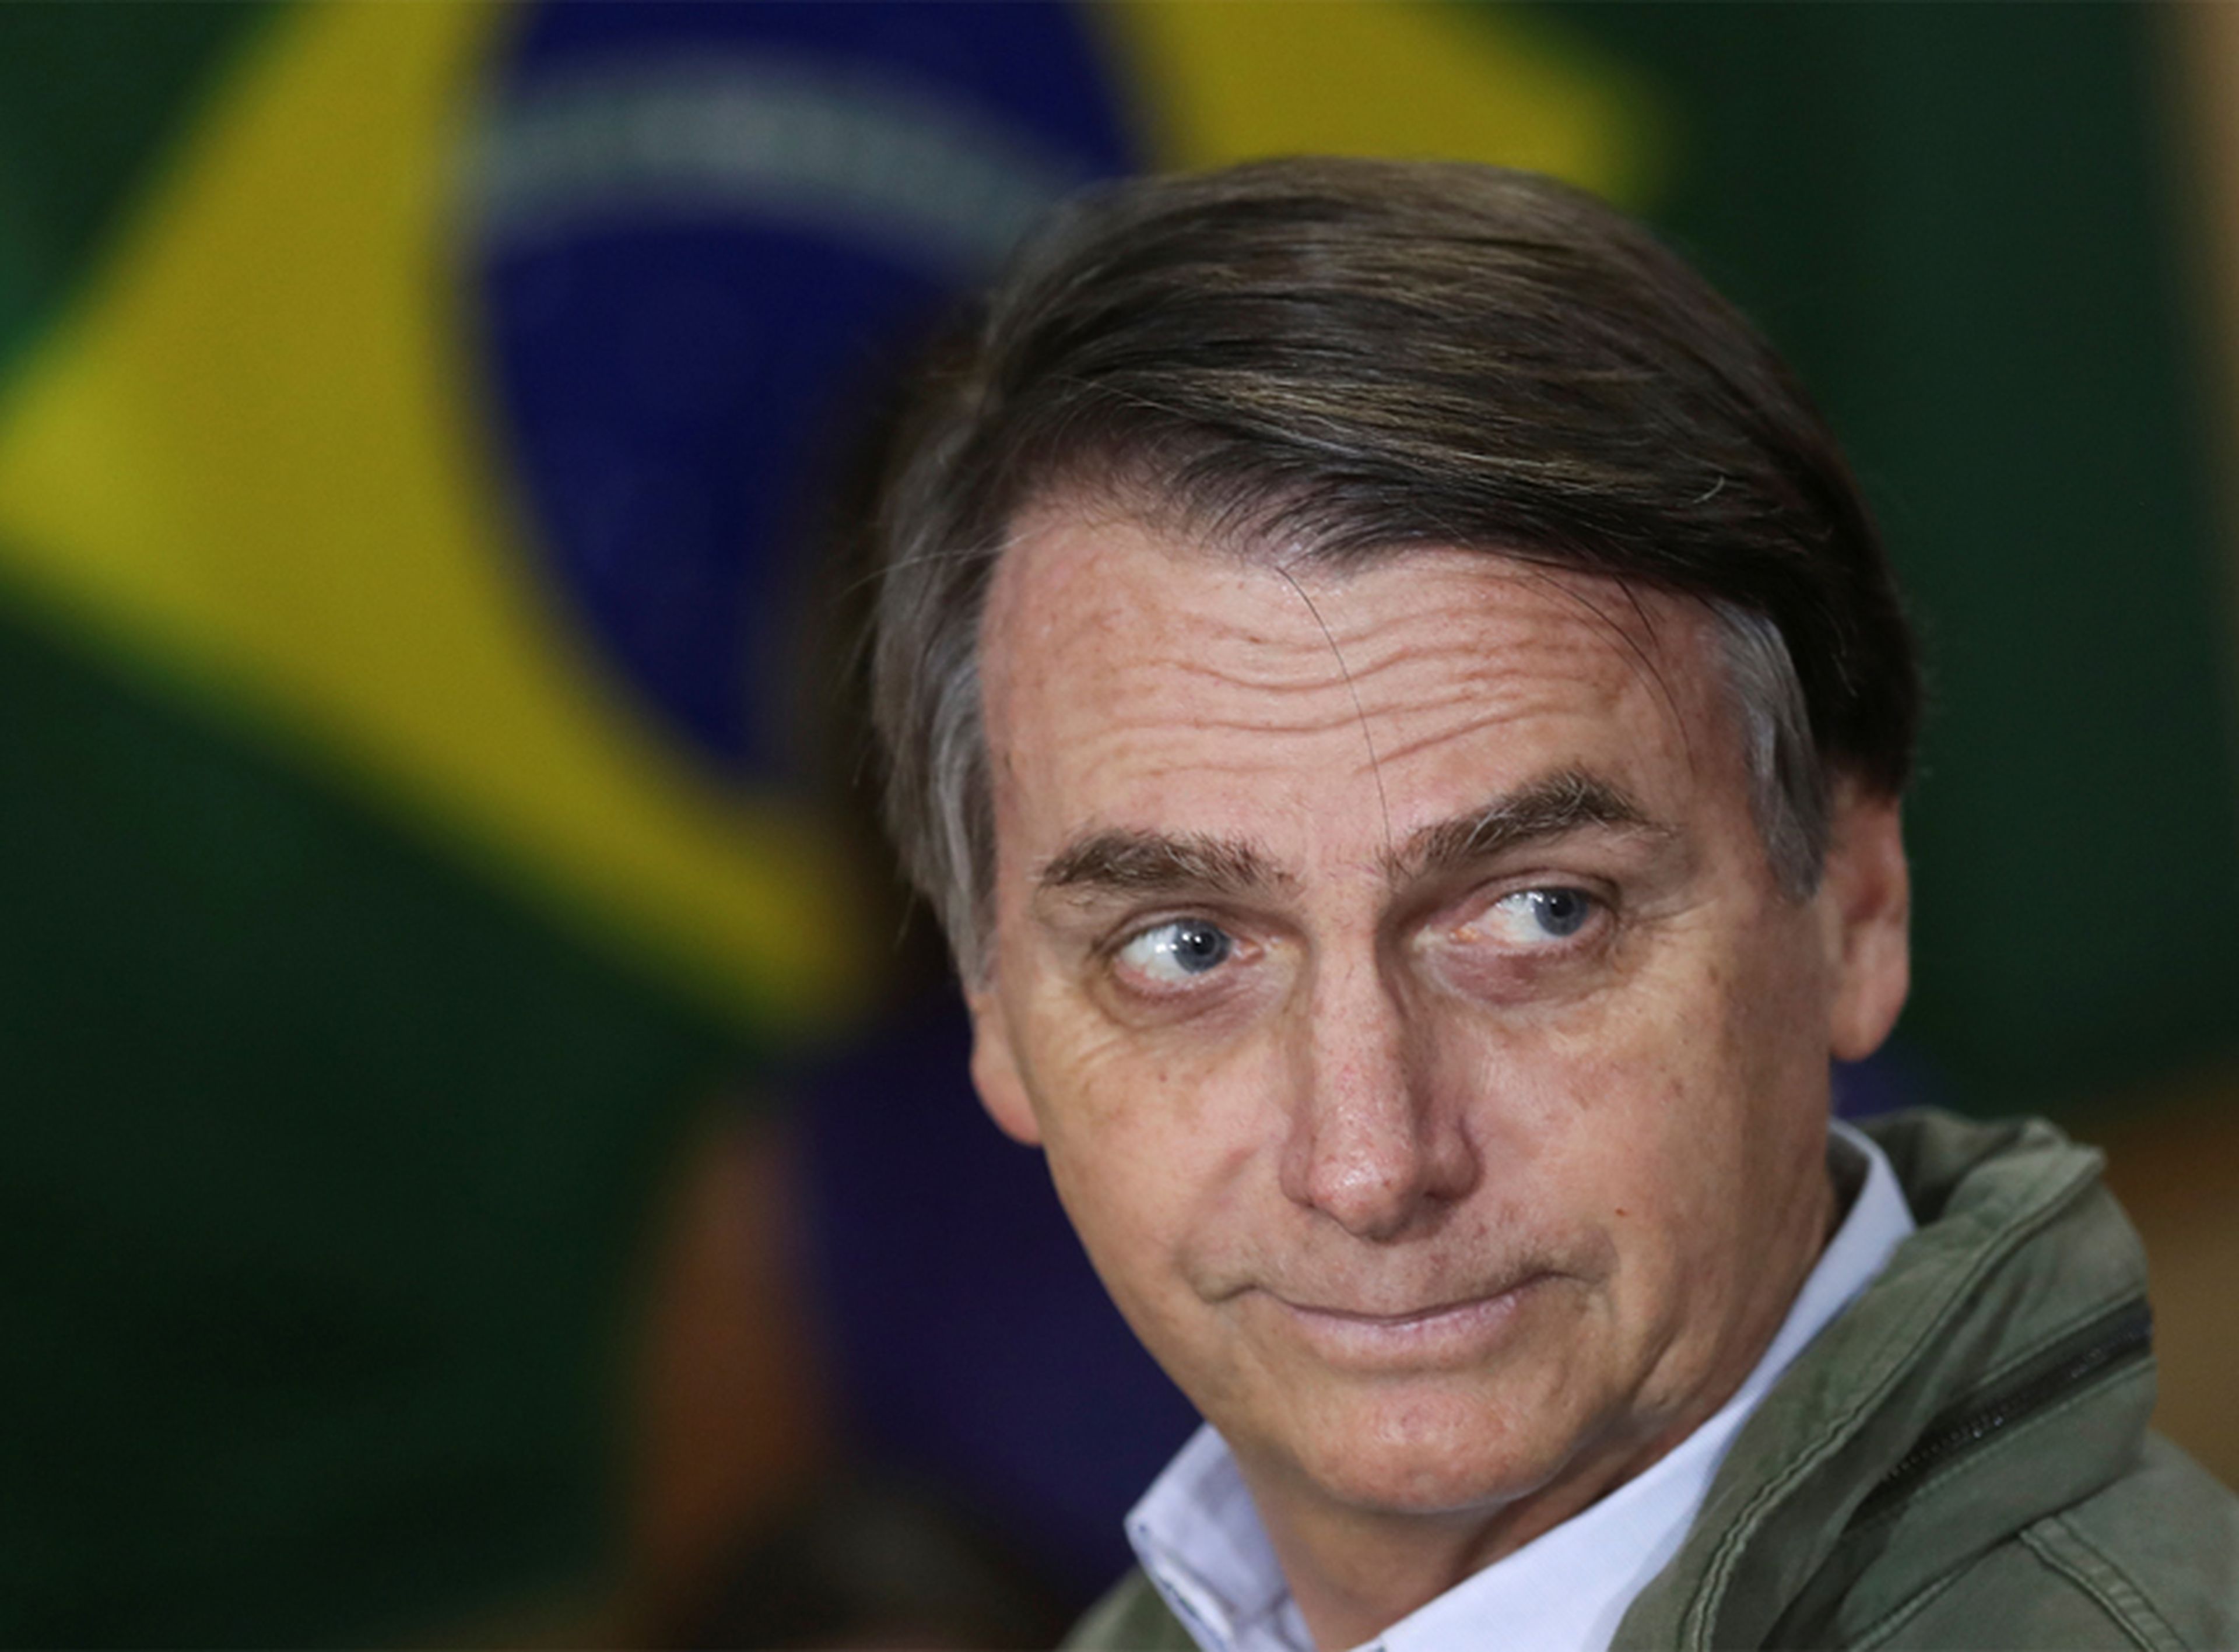 Jair Bolsonaro, líder del PSL y de ultraderecha, señalan los expertos de este reportaje.